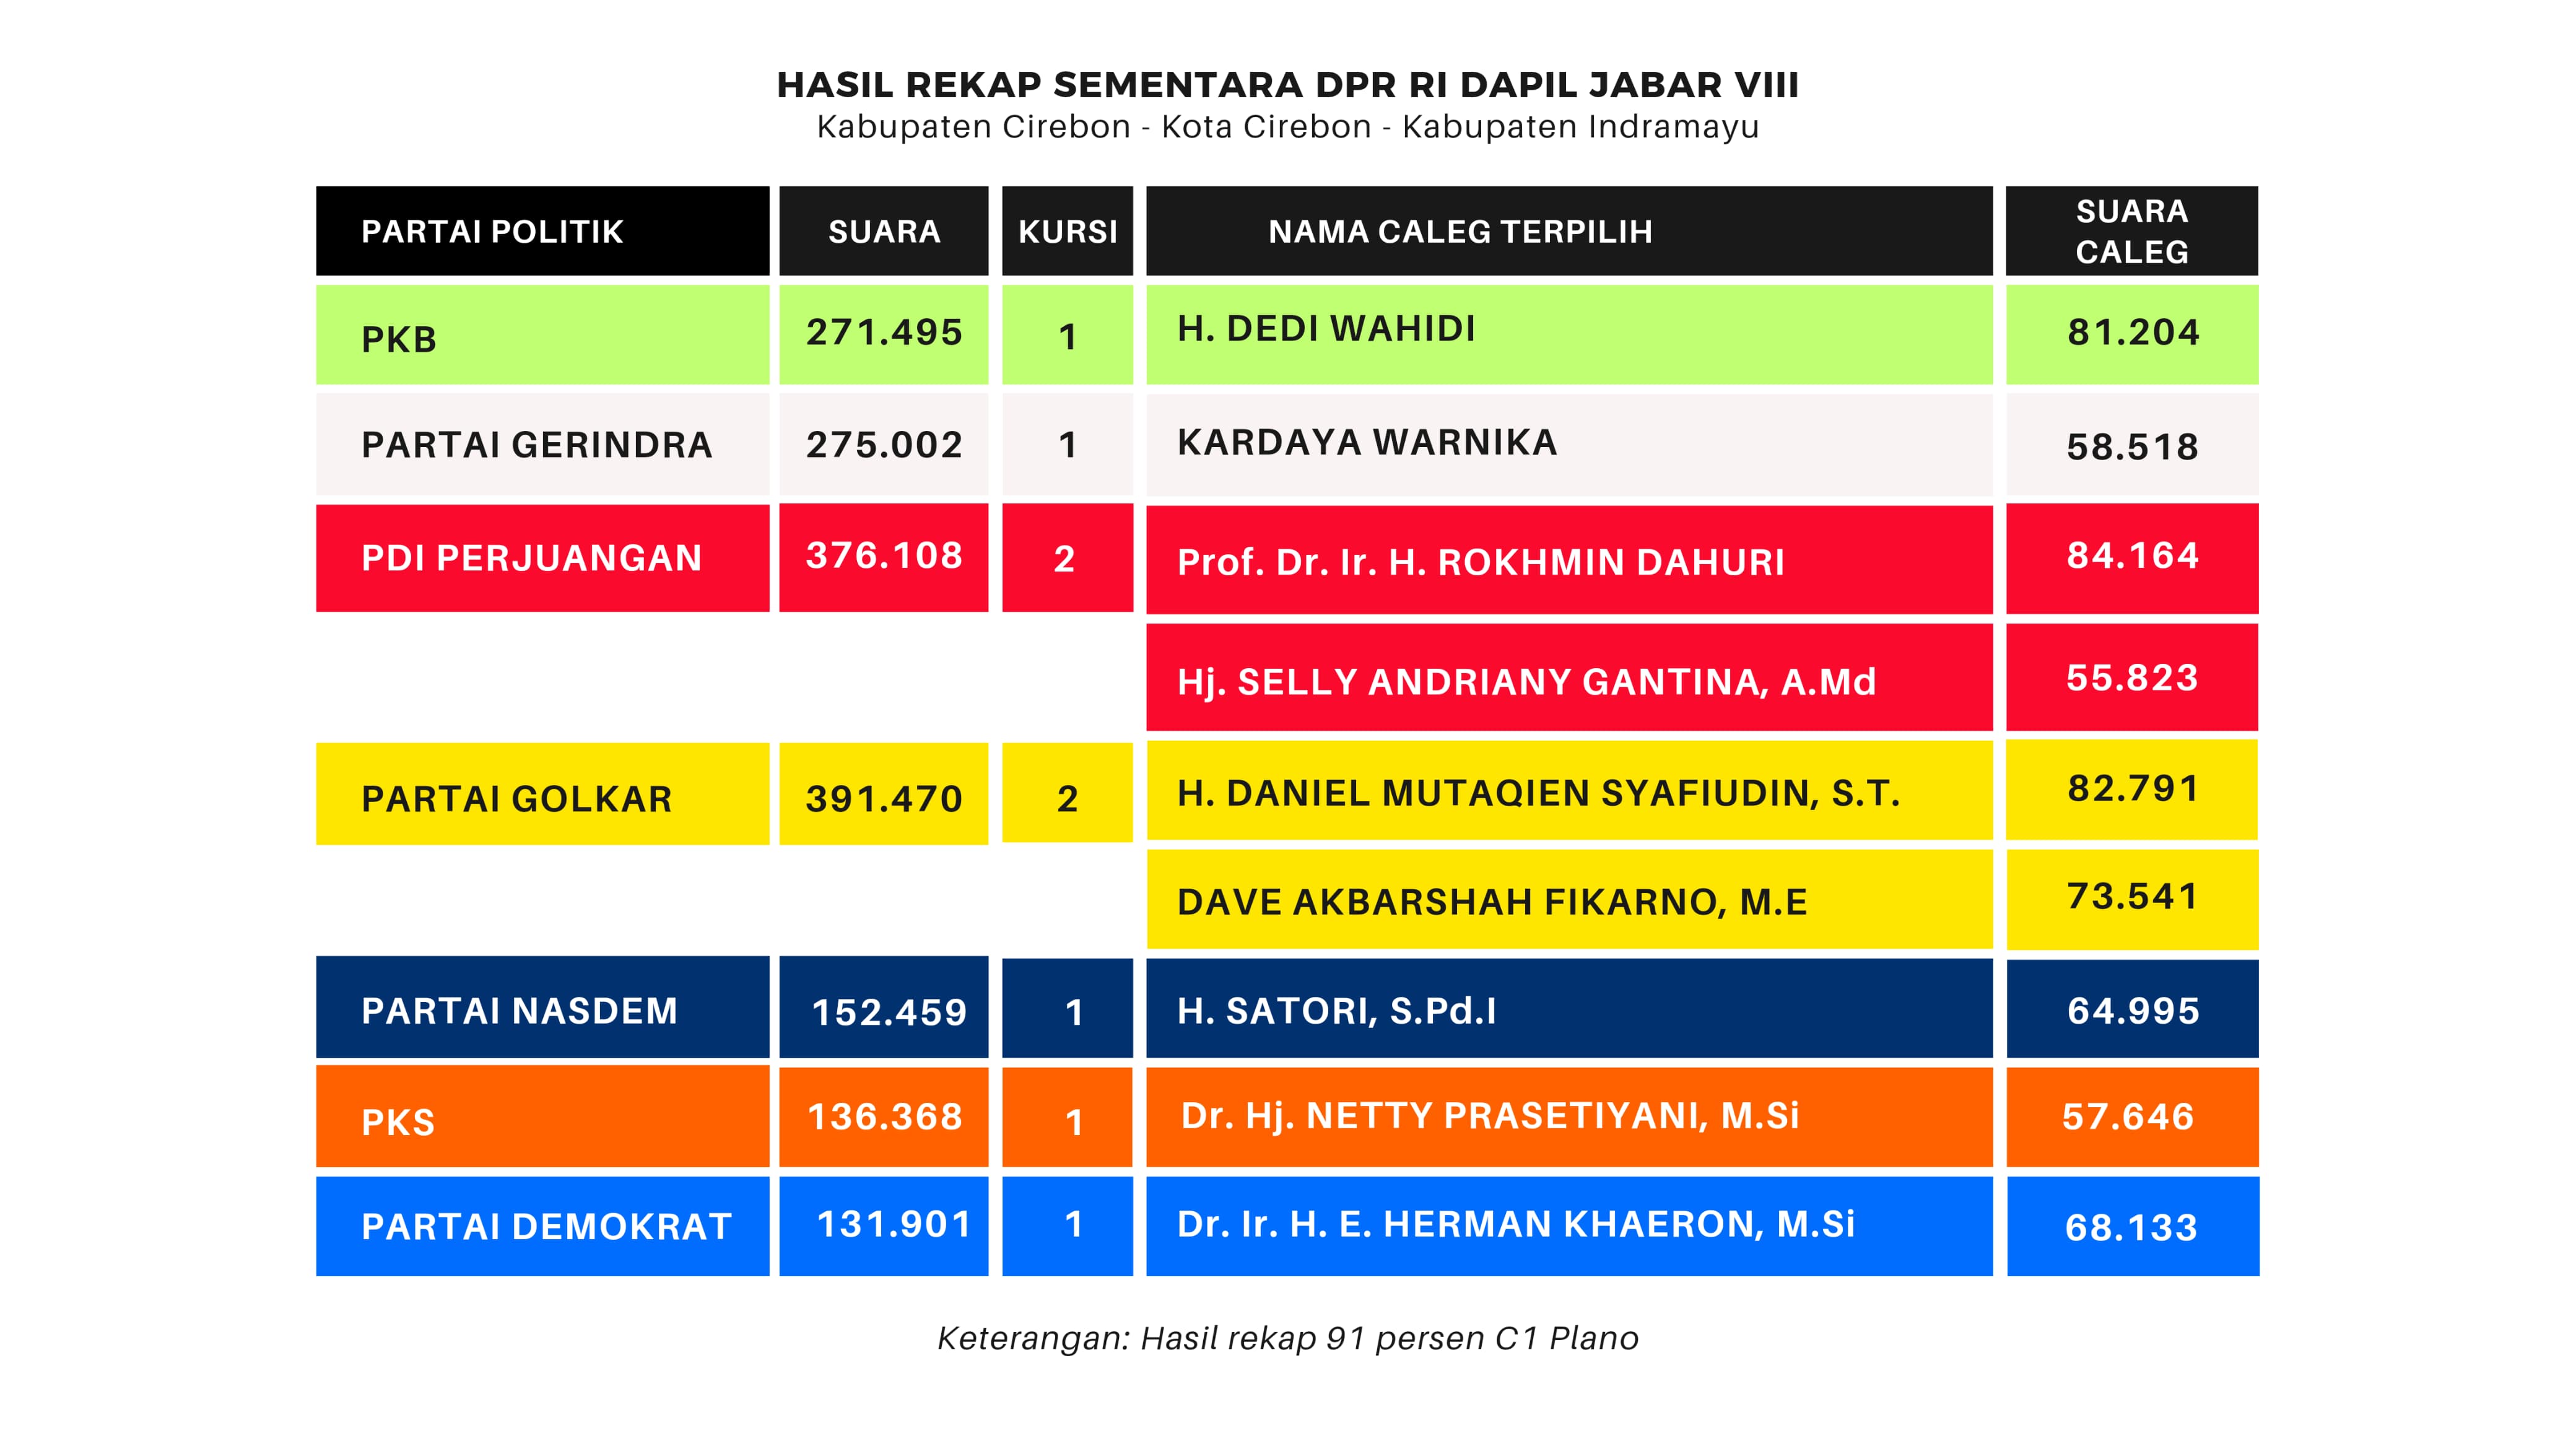 Ini Prediksi Jawara Jabar VIII, 7 Petahana Bertahan di Senayan